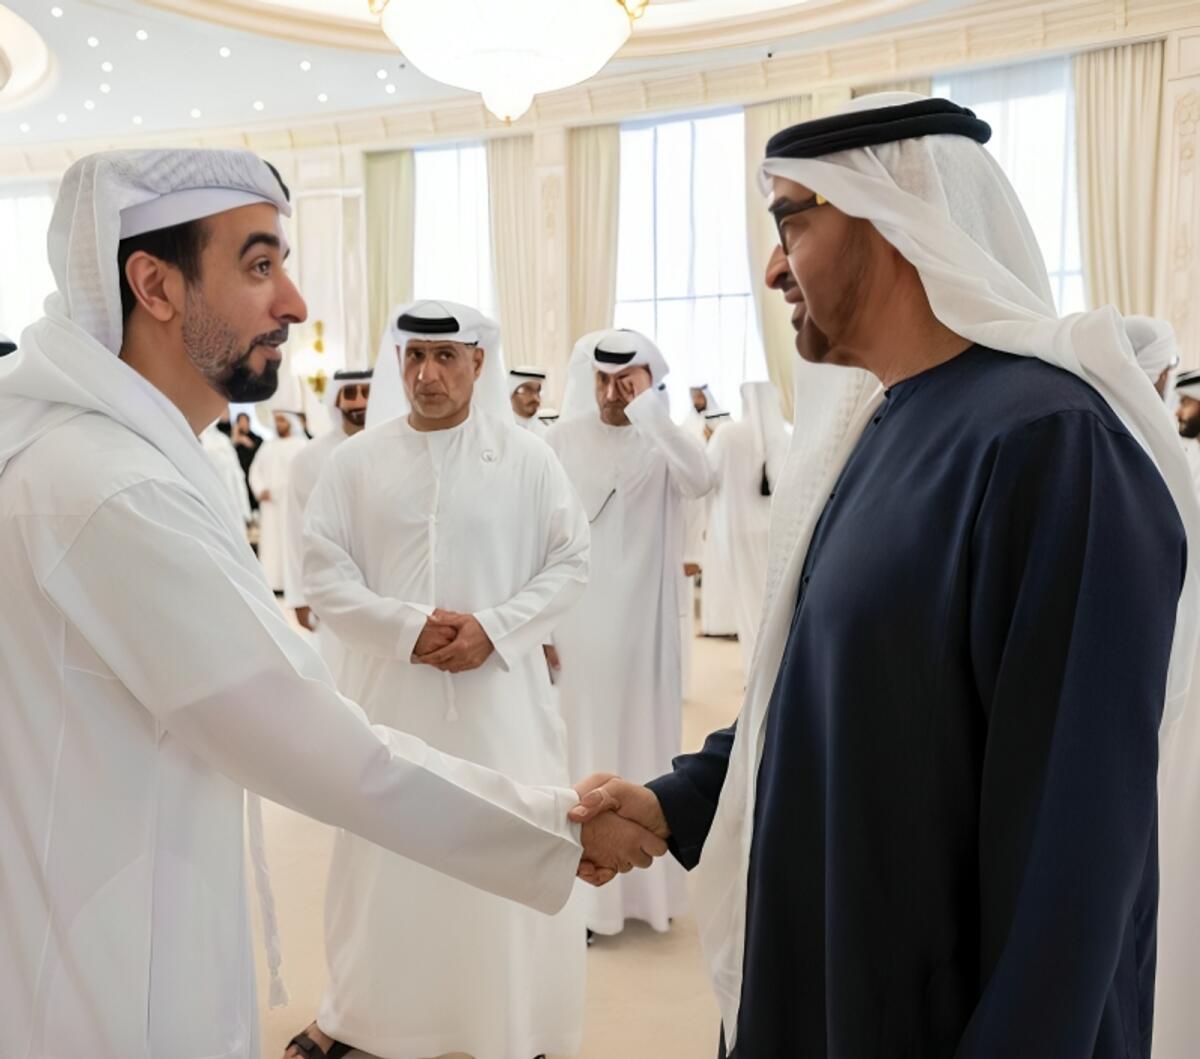 Al Khoori meets the President Sheikh Mohamed